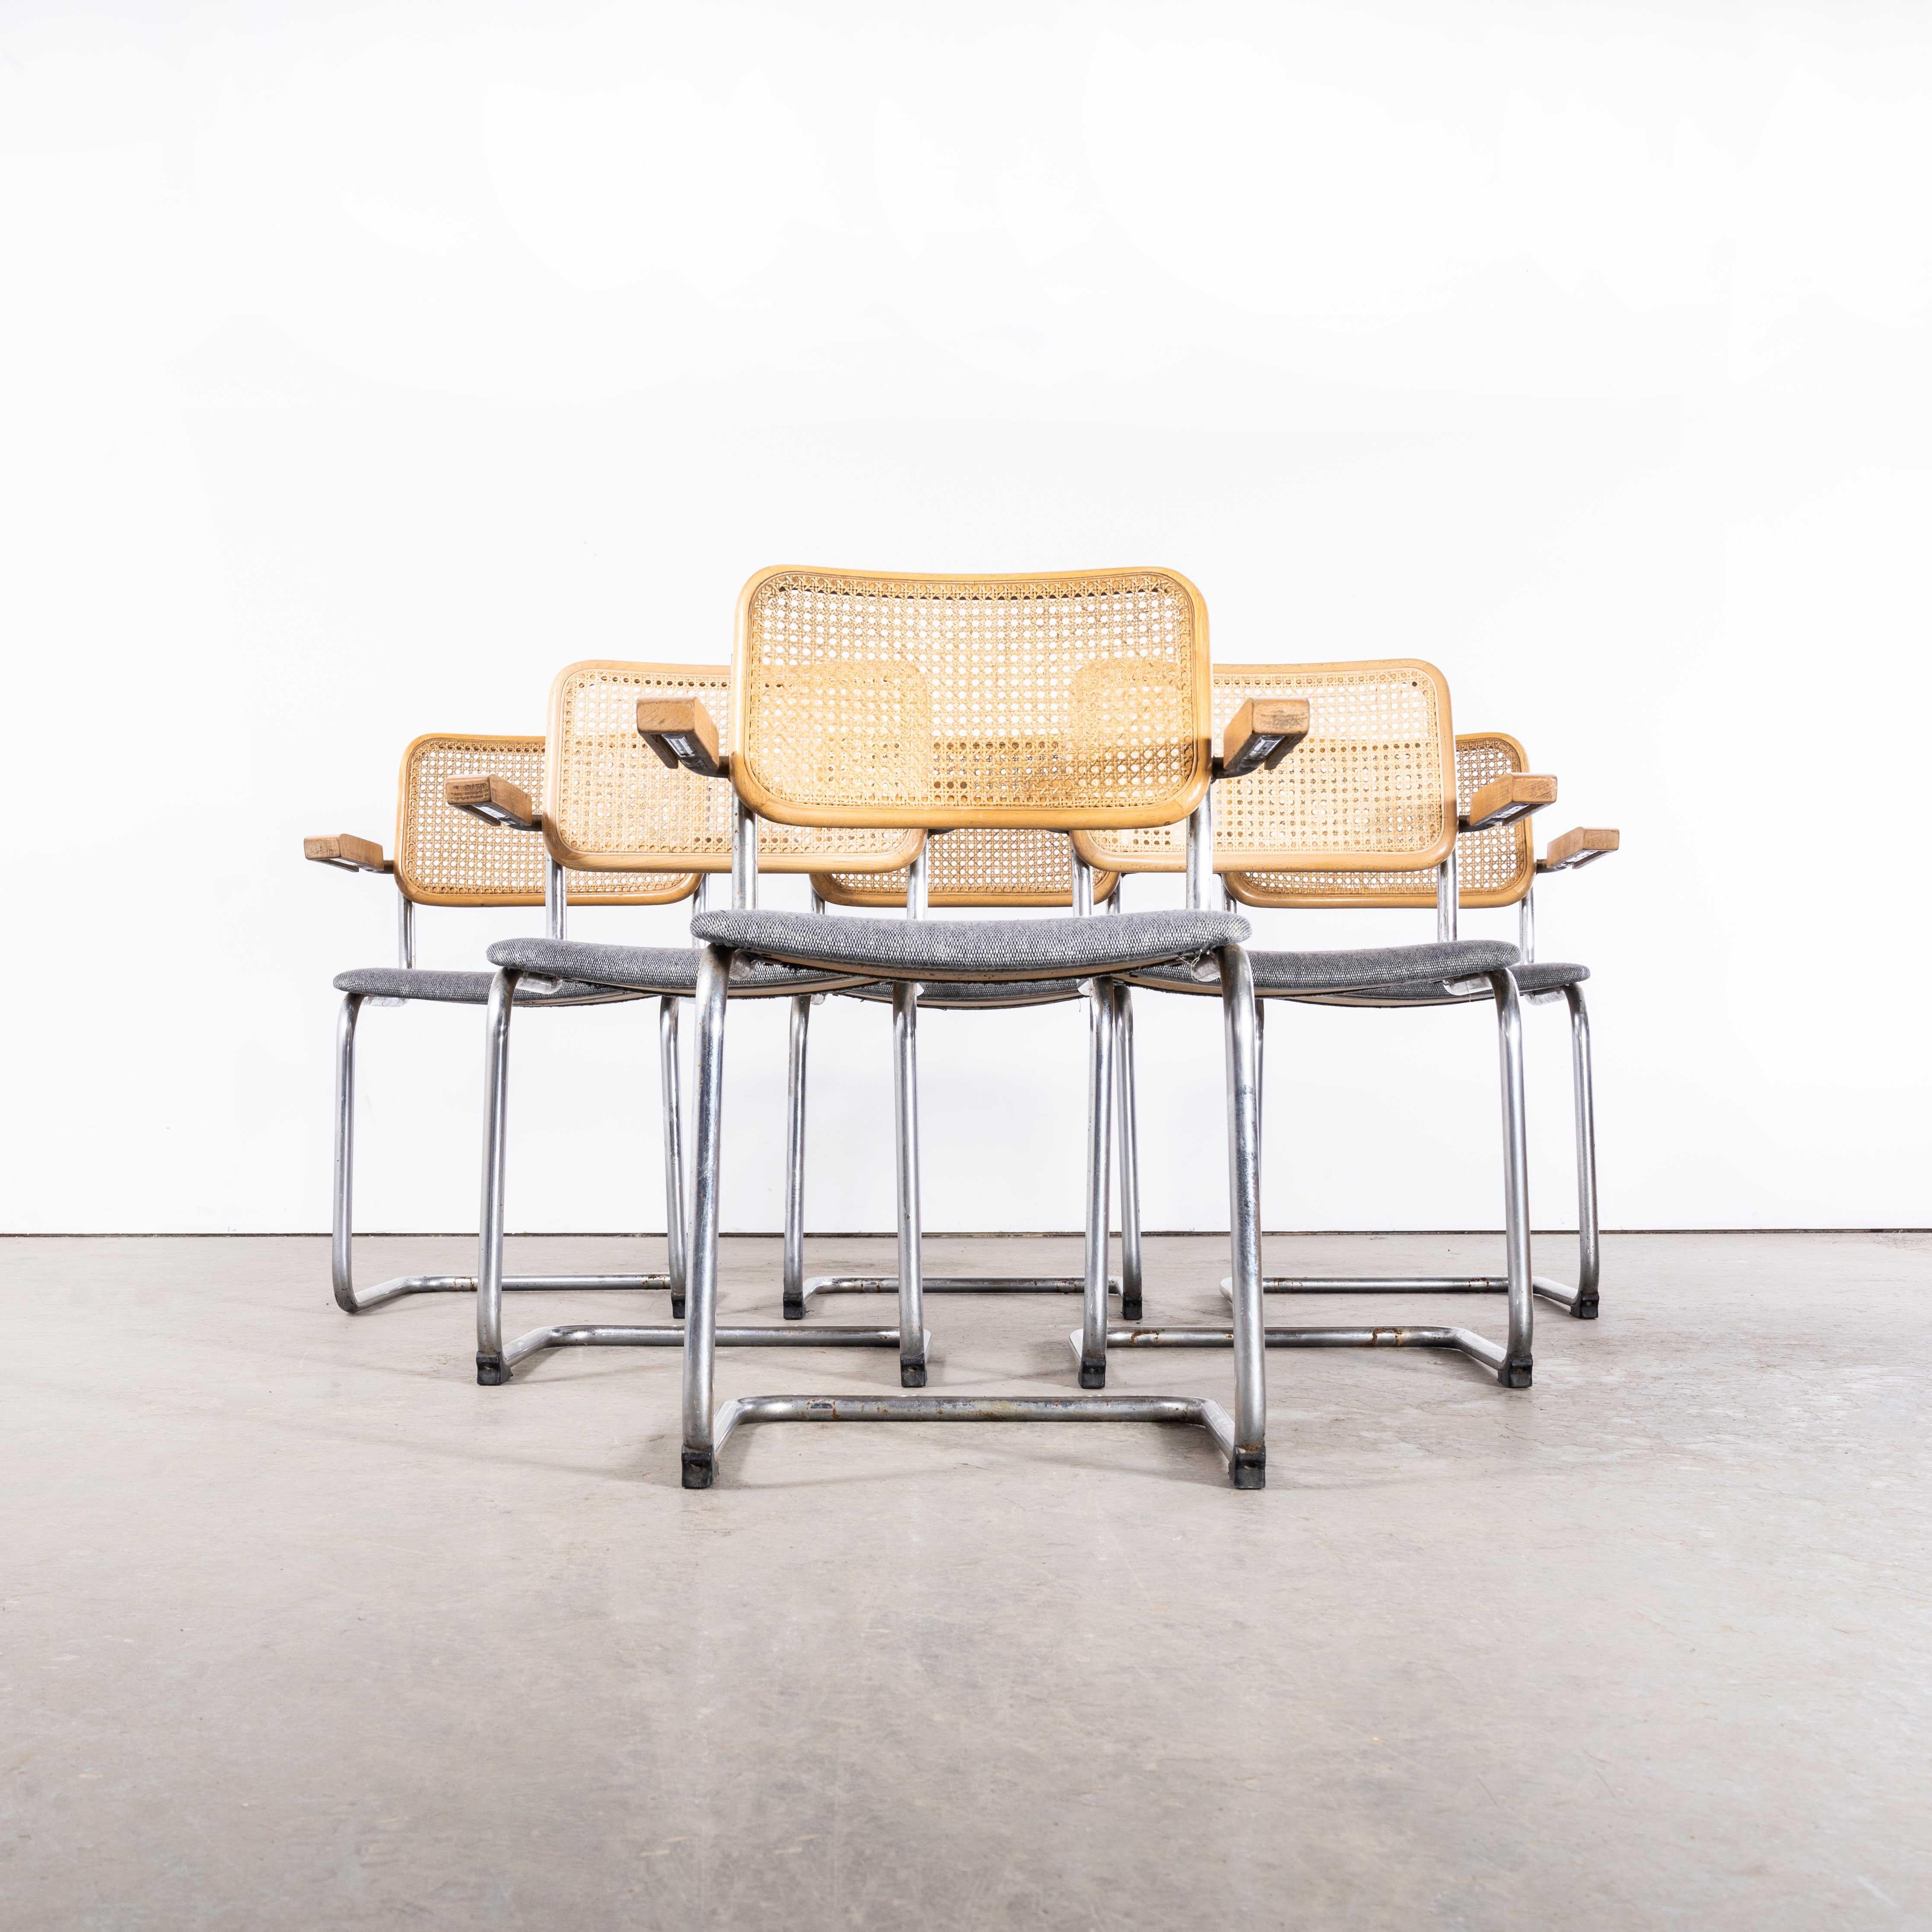 1970's Freischwinger Rahmen Cane Backed Dining Chair - Set von sechs
1970's Cantilever Frame Cane Backed Dining Chair - Set von sechs. Klassischer Freischwinger-Esszimmerstuhl im Bauhaus-Stil mit verchromten Gestellen, gesprenkelten Sitzen und